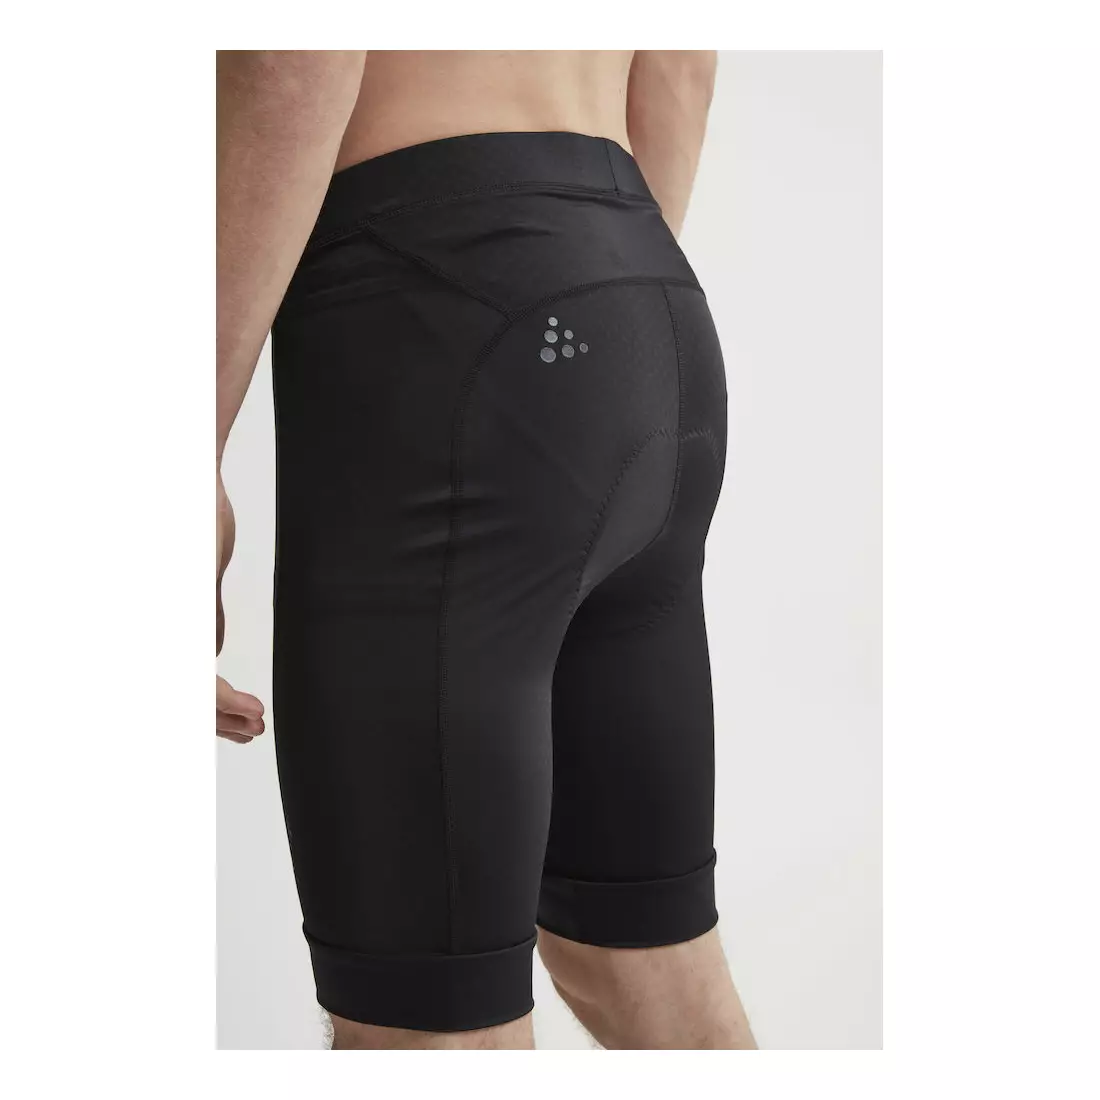 Pantaloni scurți de ciclism pentru bărbați CRAFT RISE, negri 1906100-999999